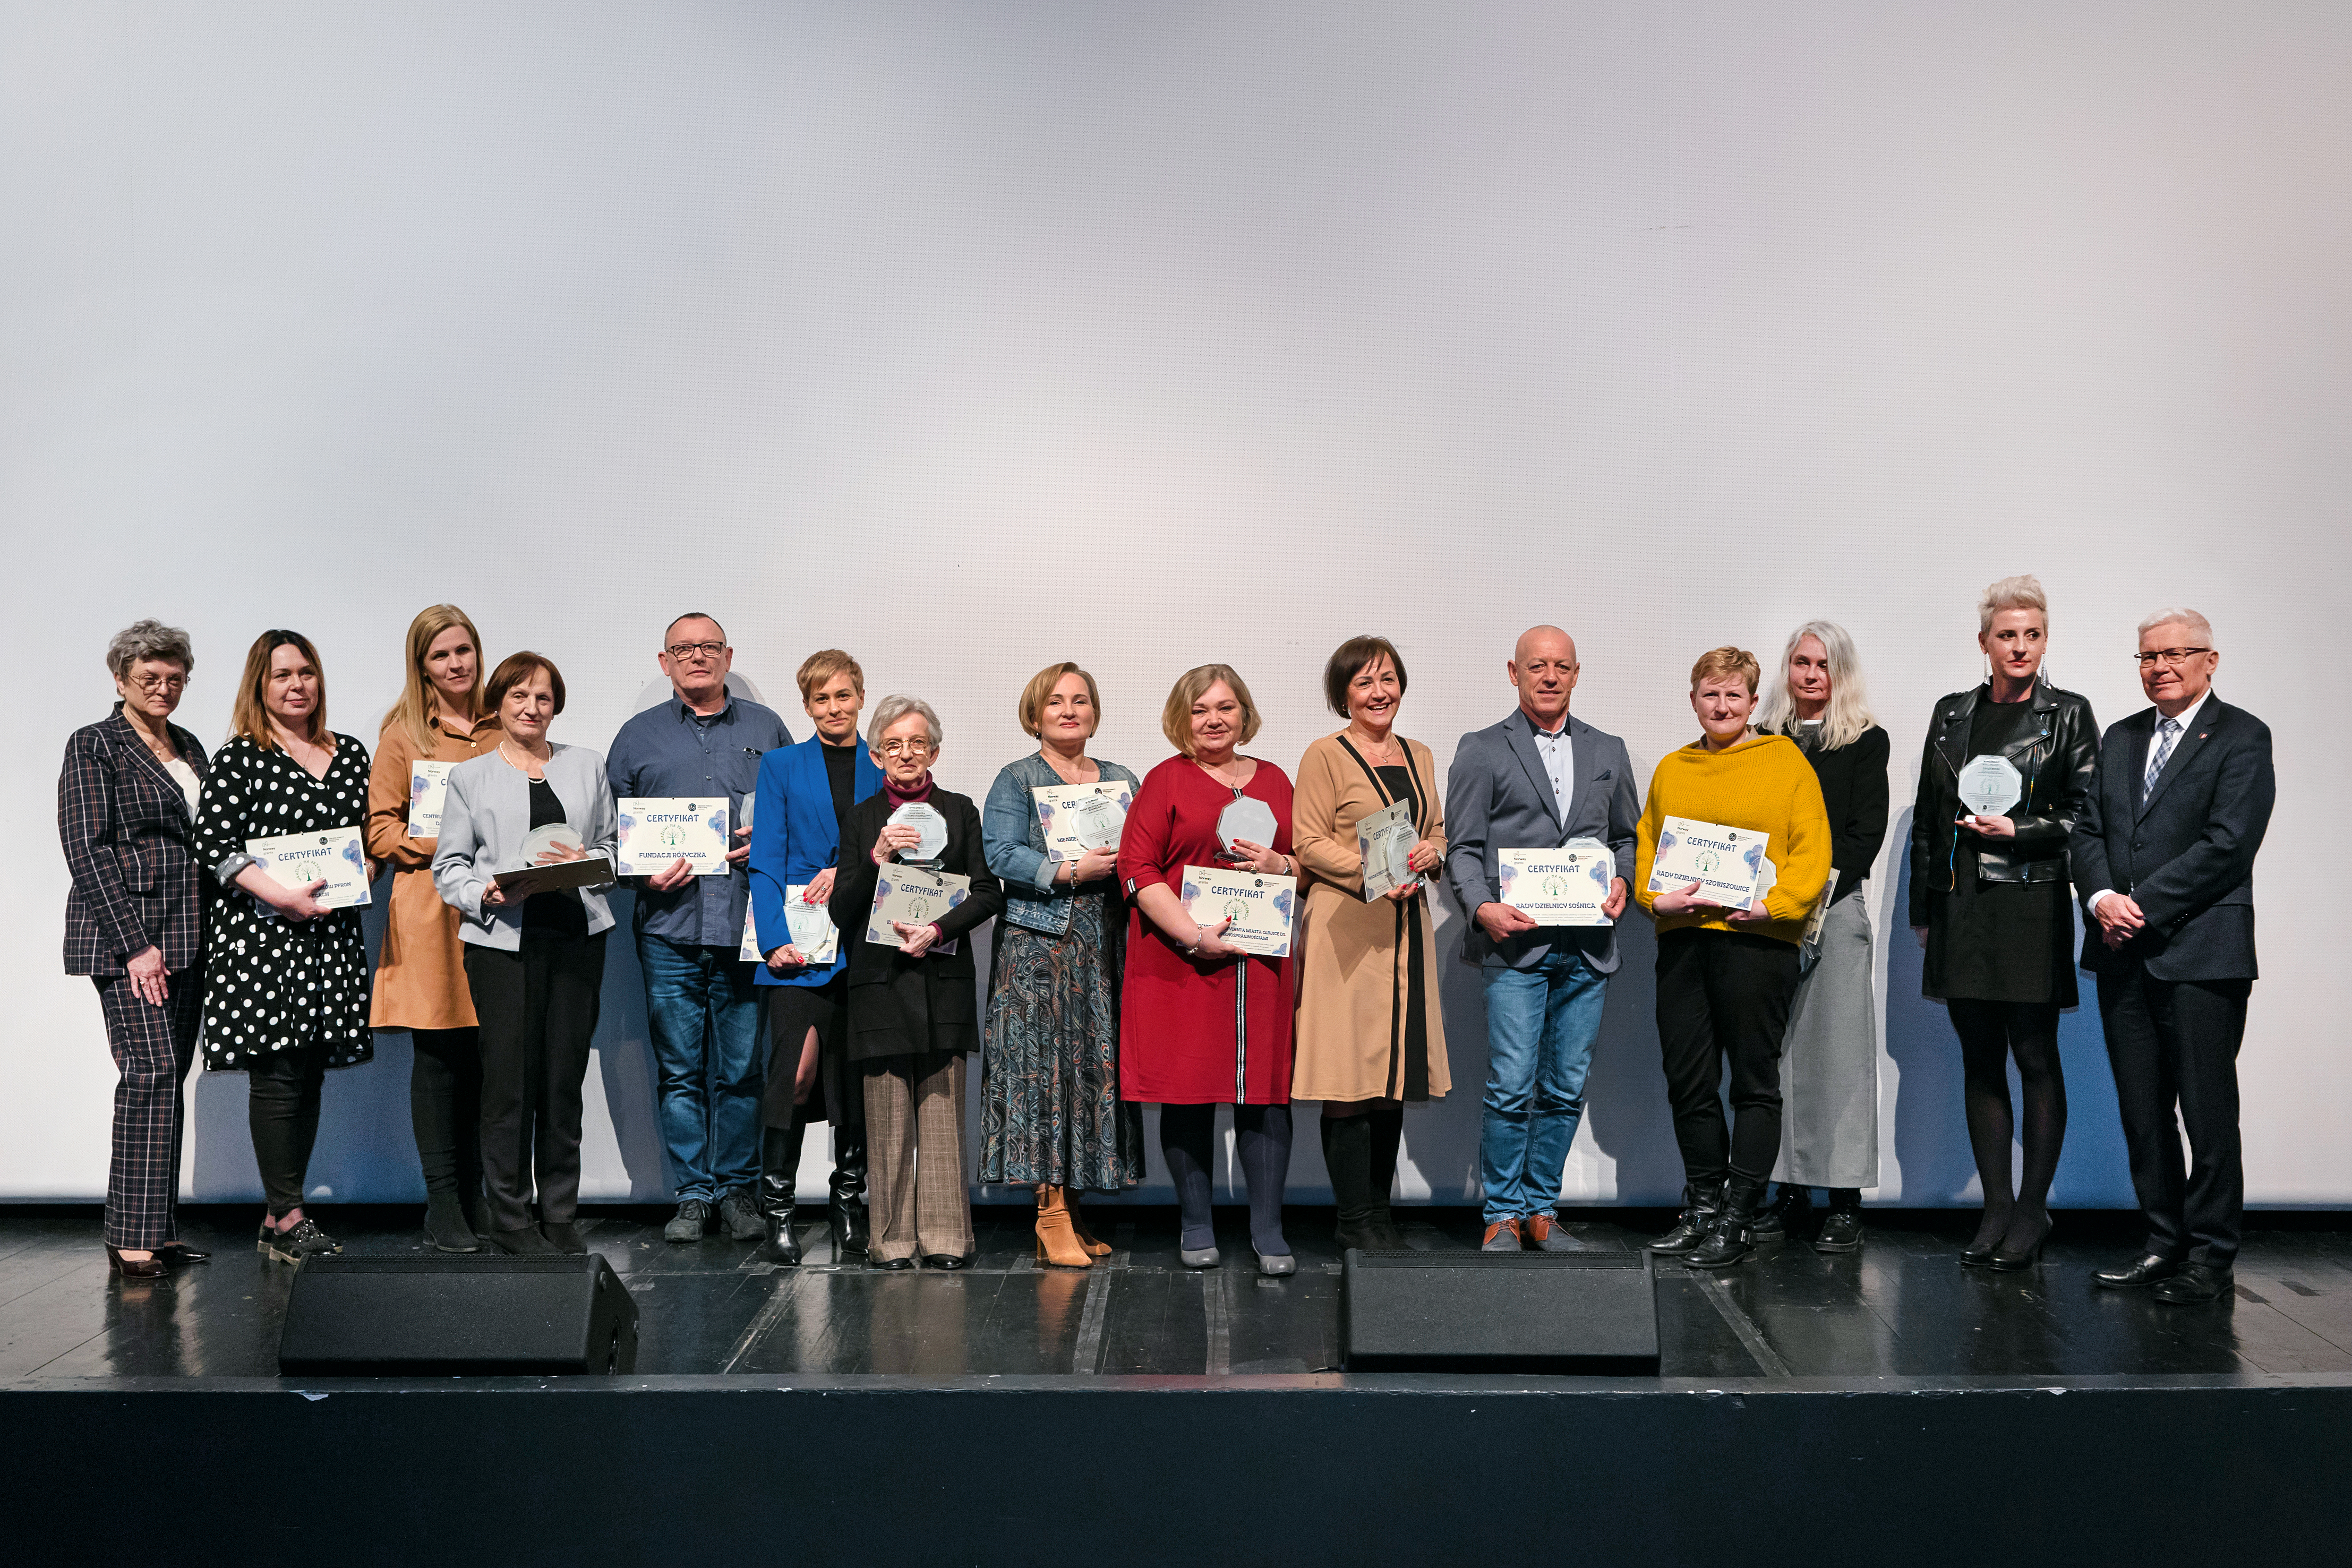 Osoby nagrodzone certyfikatem "Wrażliwi na przemoc" pozujący do zdjęcia z prezydentem Gliwic Adamem Neumannem